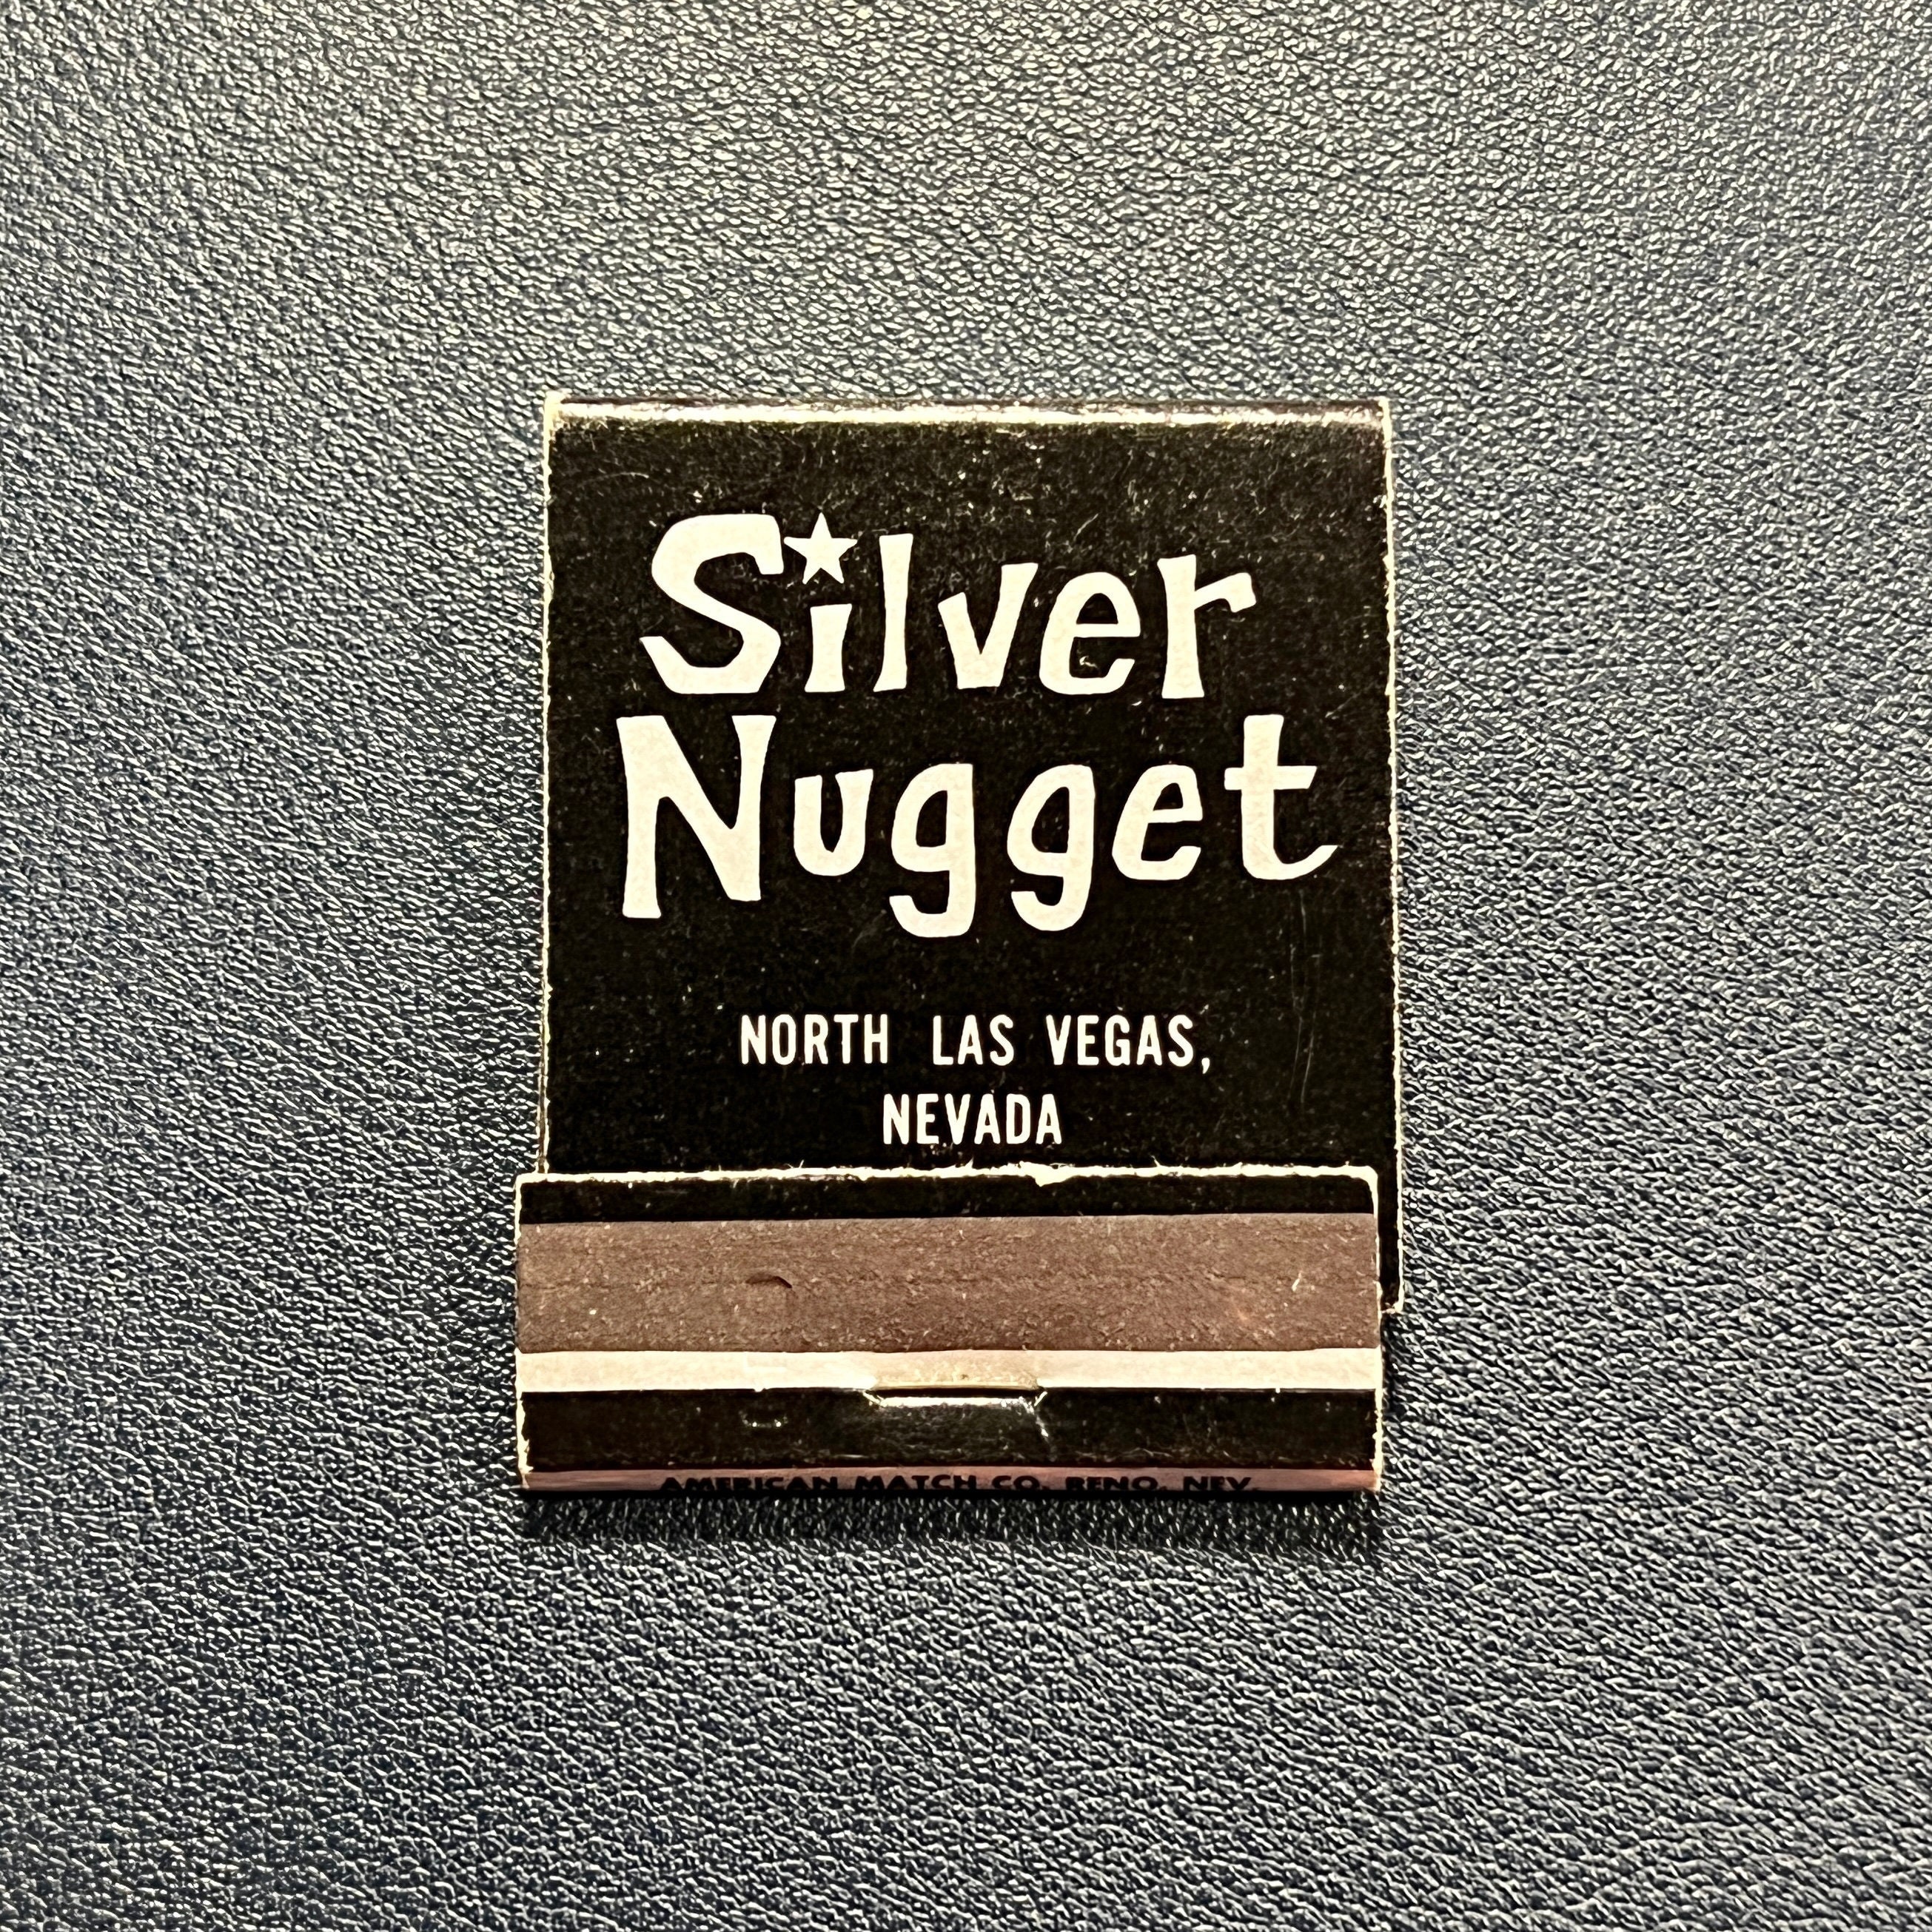 North Las Vegas' Silver Nugget Casino & Event Center